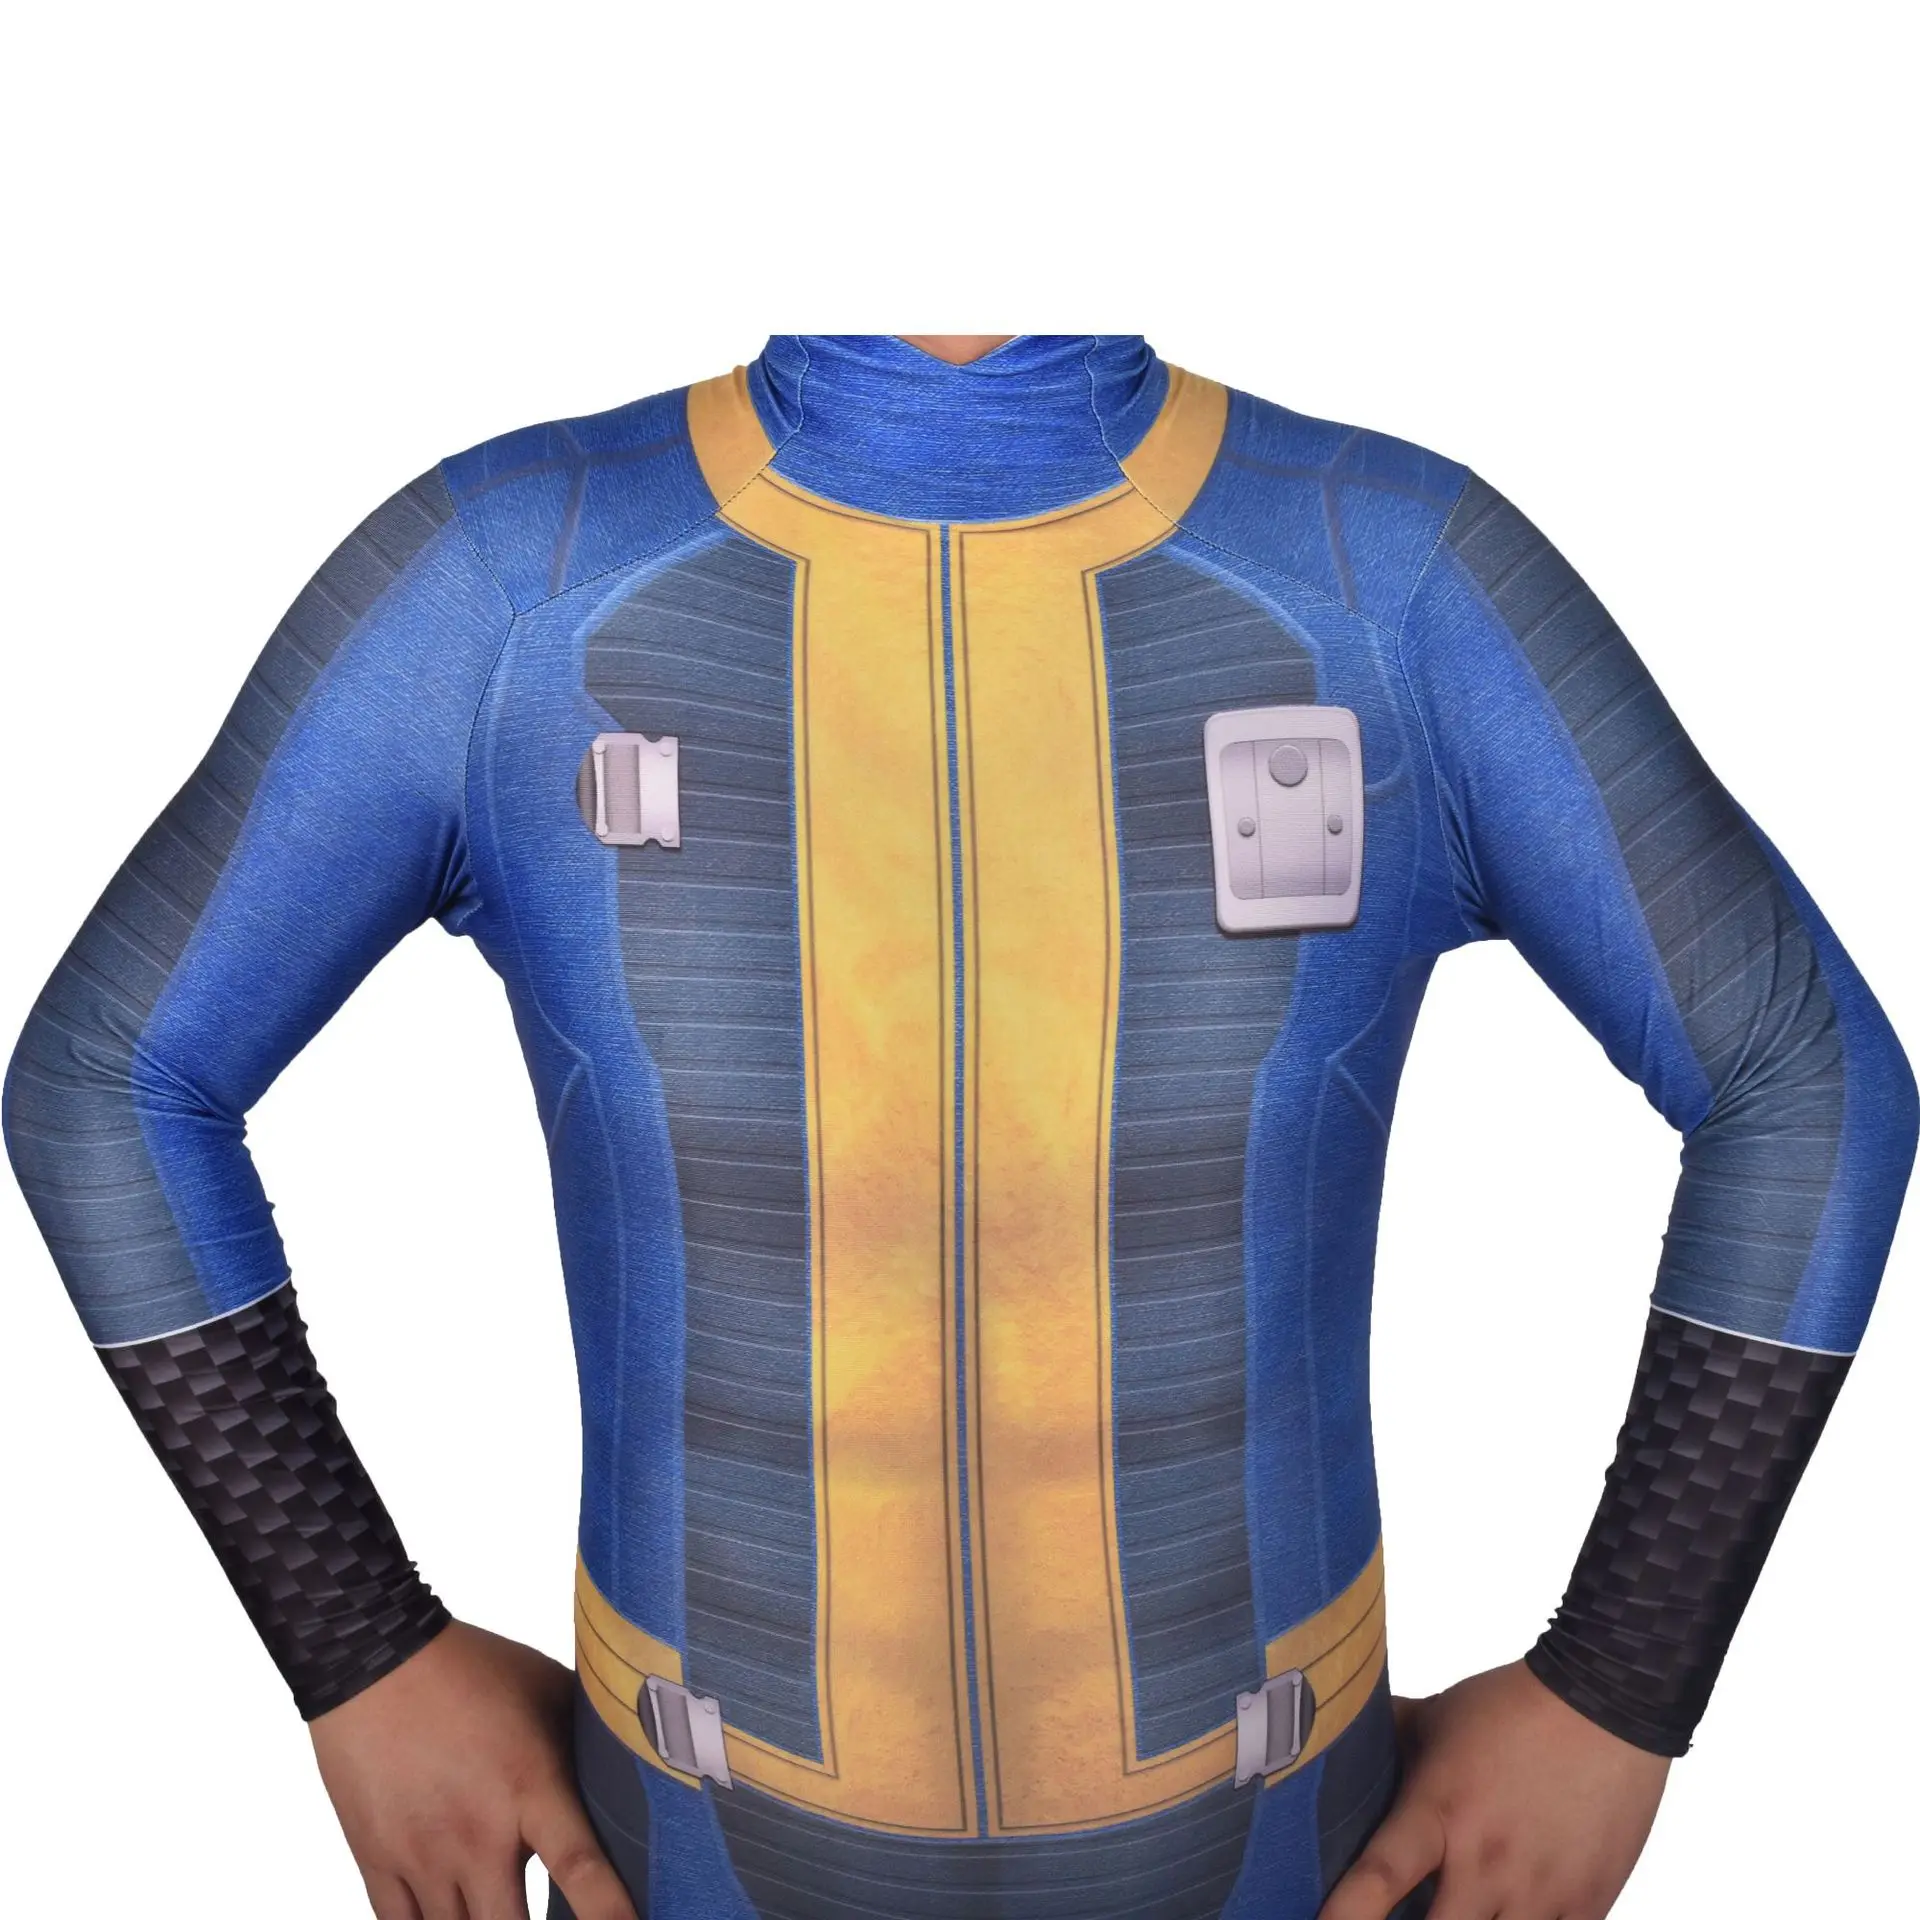 PC игры Fallout 4 Косплей Нейт костюм Хэллоуин костюмы для мужчин взрослых человек единственный выживший популярный костюм комбинезон супергероя